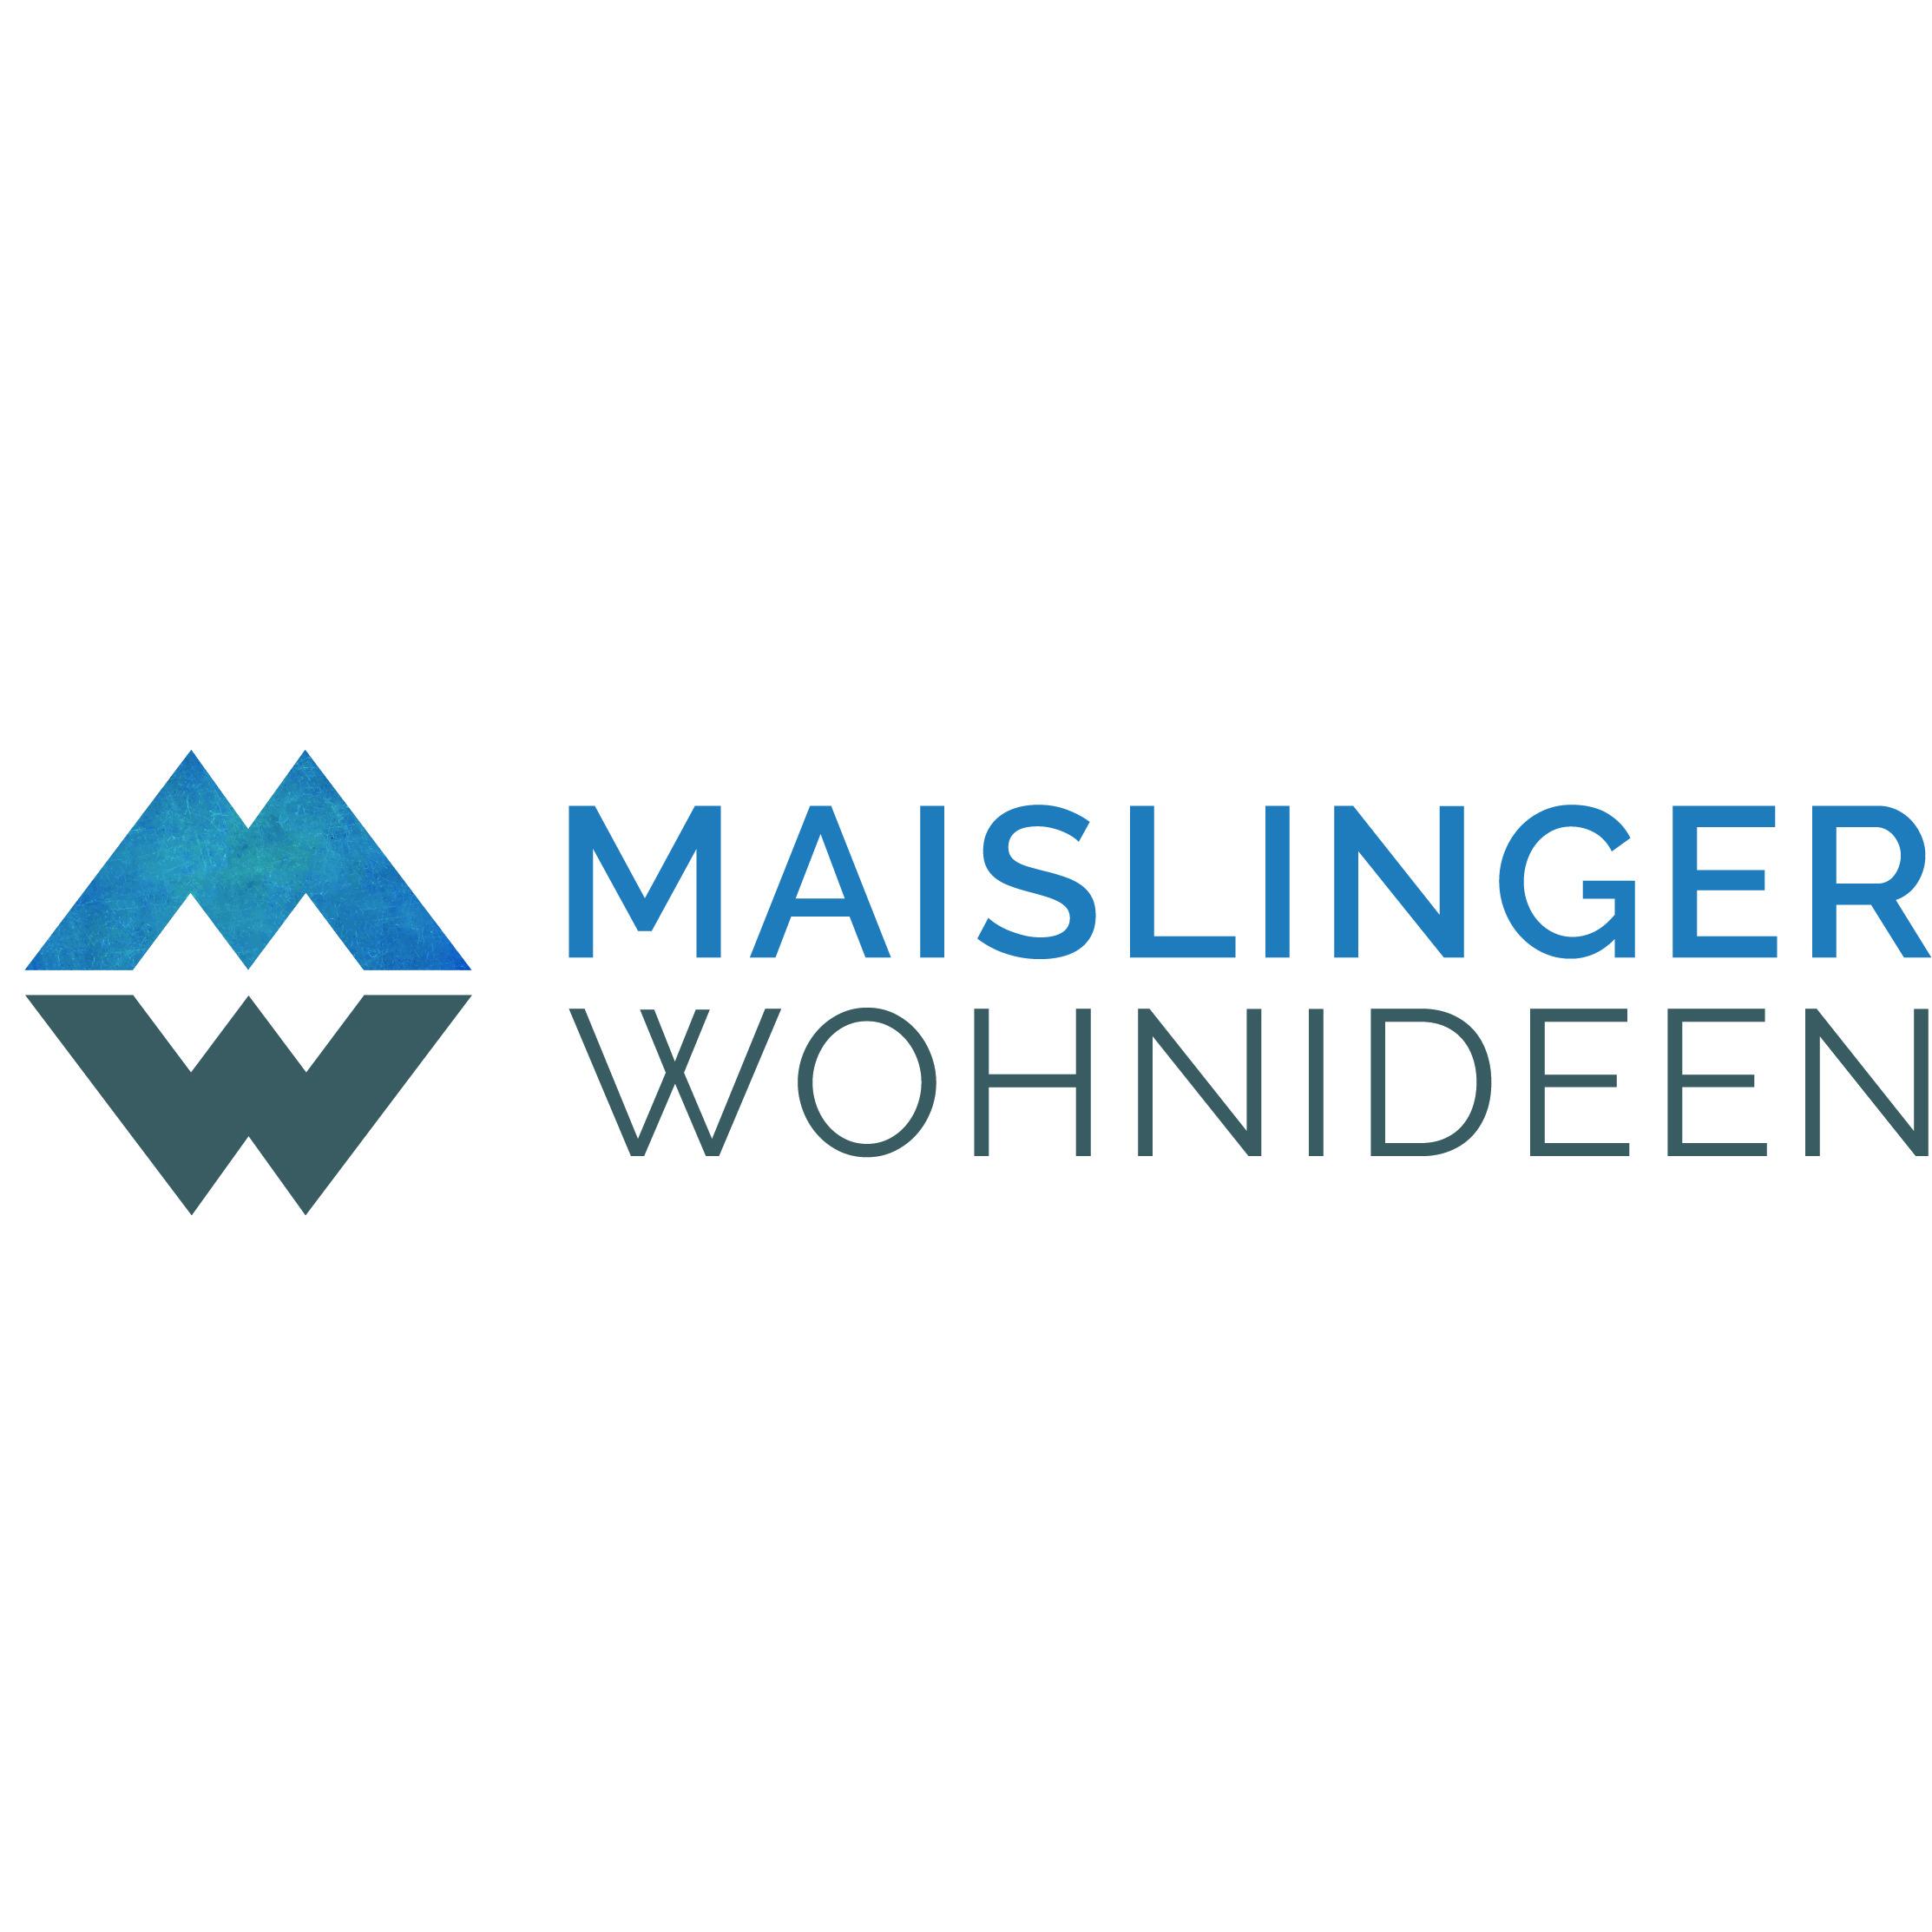 Maislinger Wohnideen Logo